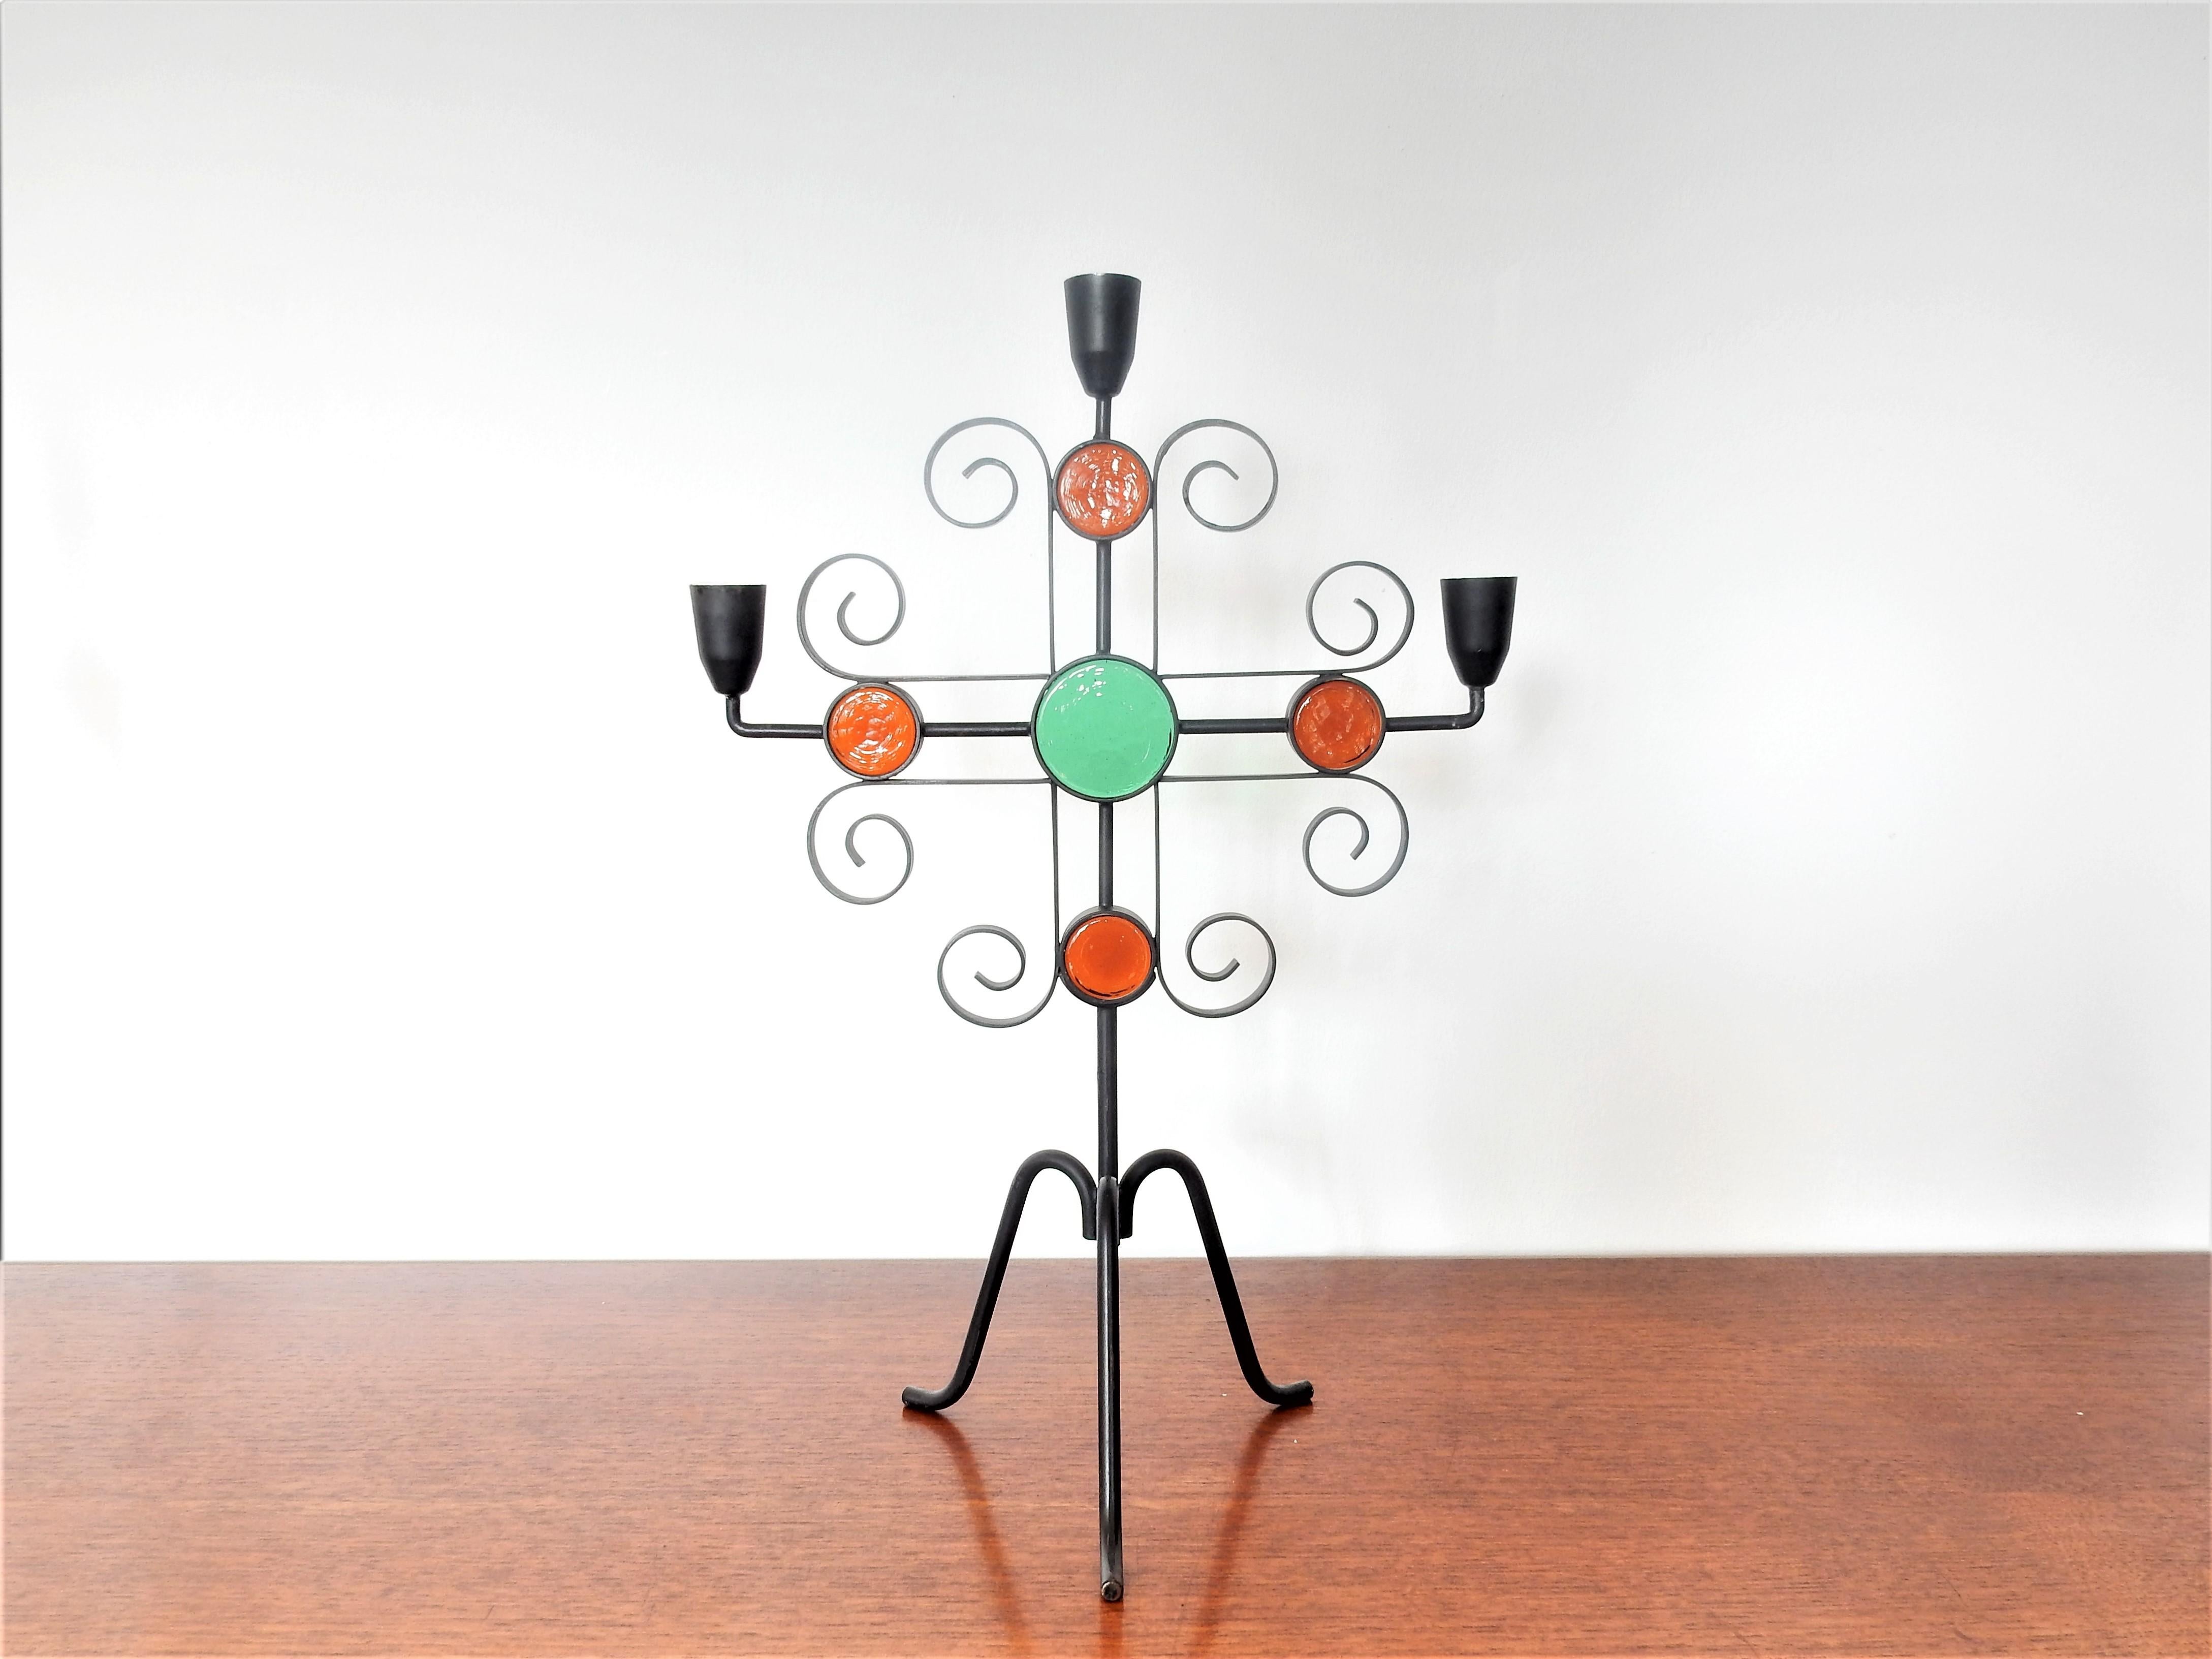 Cet élégant ensemble de candélabres ou de bougeoirs a été conçu par Gunnar Ander pour Ystad Metall en Suède dans les années 1960. Le candélabre tripode est composé d'un cadre en fer forgé peint en noir avec des inserts en verre rond orange et vert